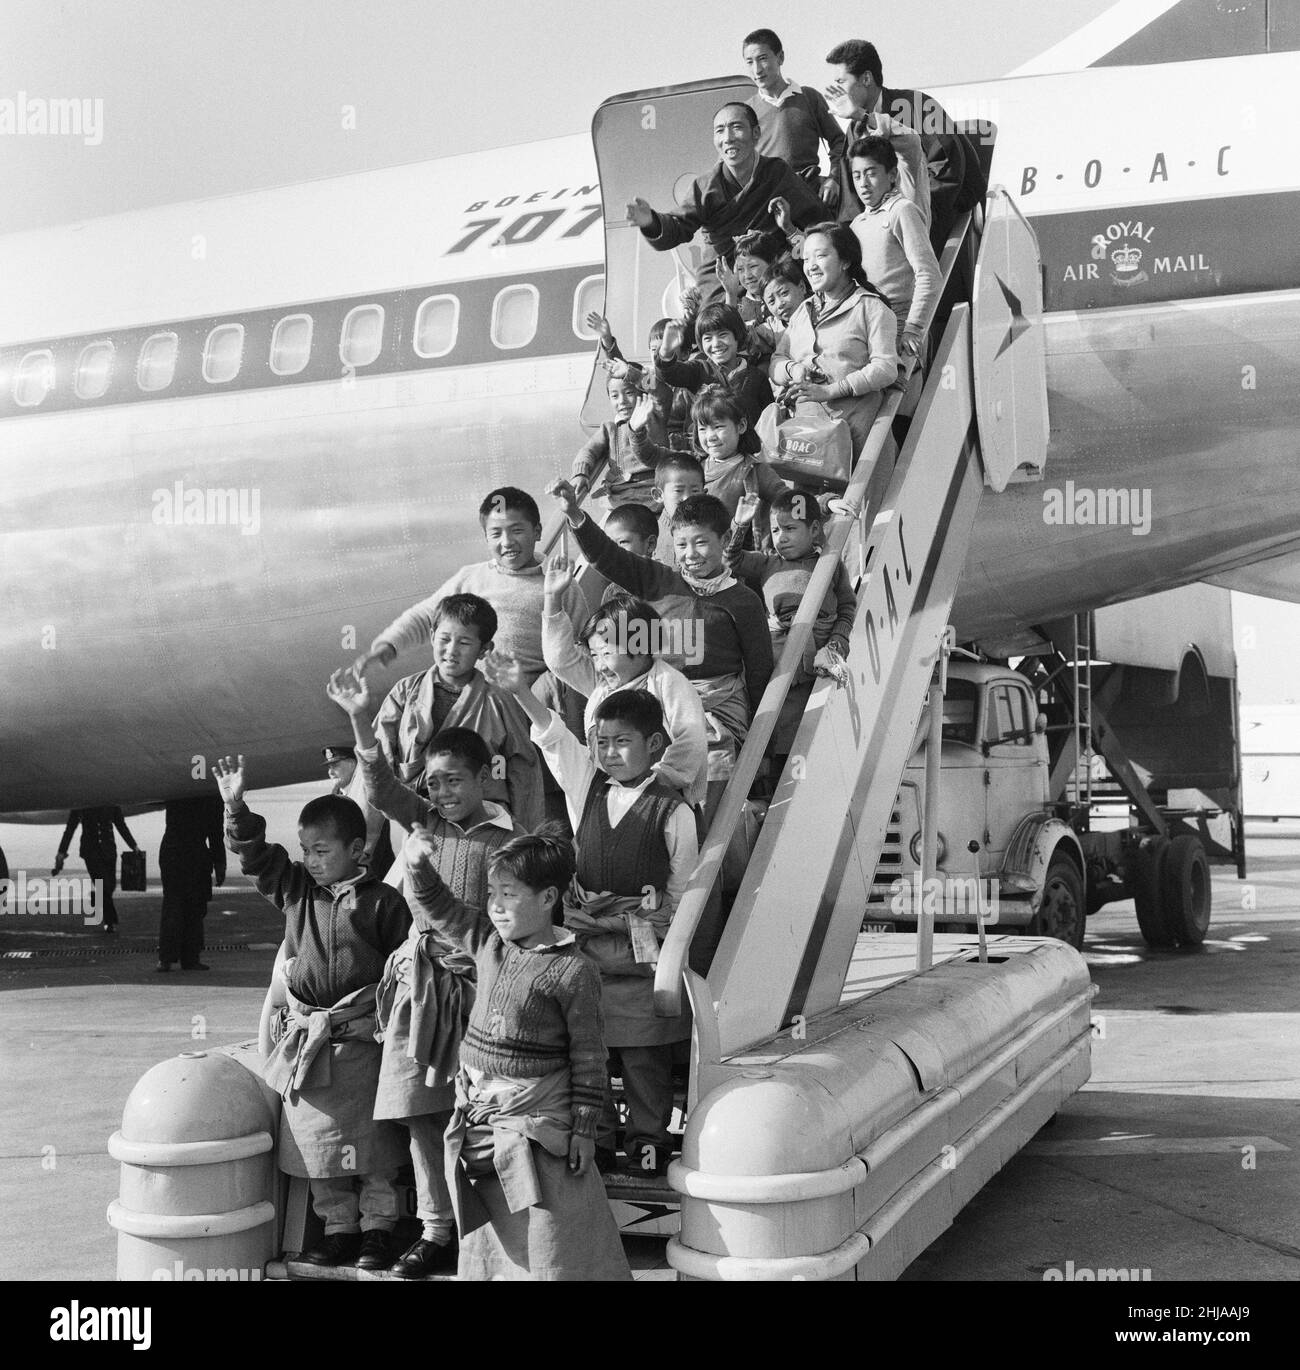 21 tibetische Flüchtlingskinder landen am Dienstag, den 26th. Februar 1963, auf dem Flughafen London Heathrow. Ein BOAC Airliner bringt die dreizehn Jungen und acht Mädchen aus einem Flüchtlingslager in Nordindien nach Großbritannien. Viele sind jetzt verwaist, die Kinder sind vor der chinesischen Besatzung und Verfolgung geflohen. Unsere Bildershow ... tibetische Flüchtlinge posieren für Fotos, während sie das Flugzeug verlassen. Die Kinder sollen in das Pestalozzi Village for Children in Sedlescombe, East Sussex, verlegt werden, das in den nächsten zehn Jahren ihr neues Zuhause sein wird. Die Gemeinde ist nach dem Schweizer Pädagogen des 18. Jahrhunderts Johann Heinri benannt Stockfoto